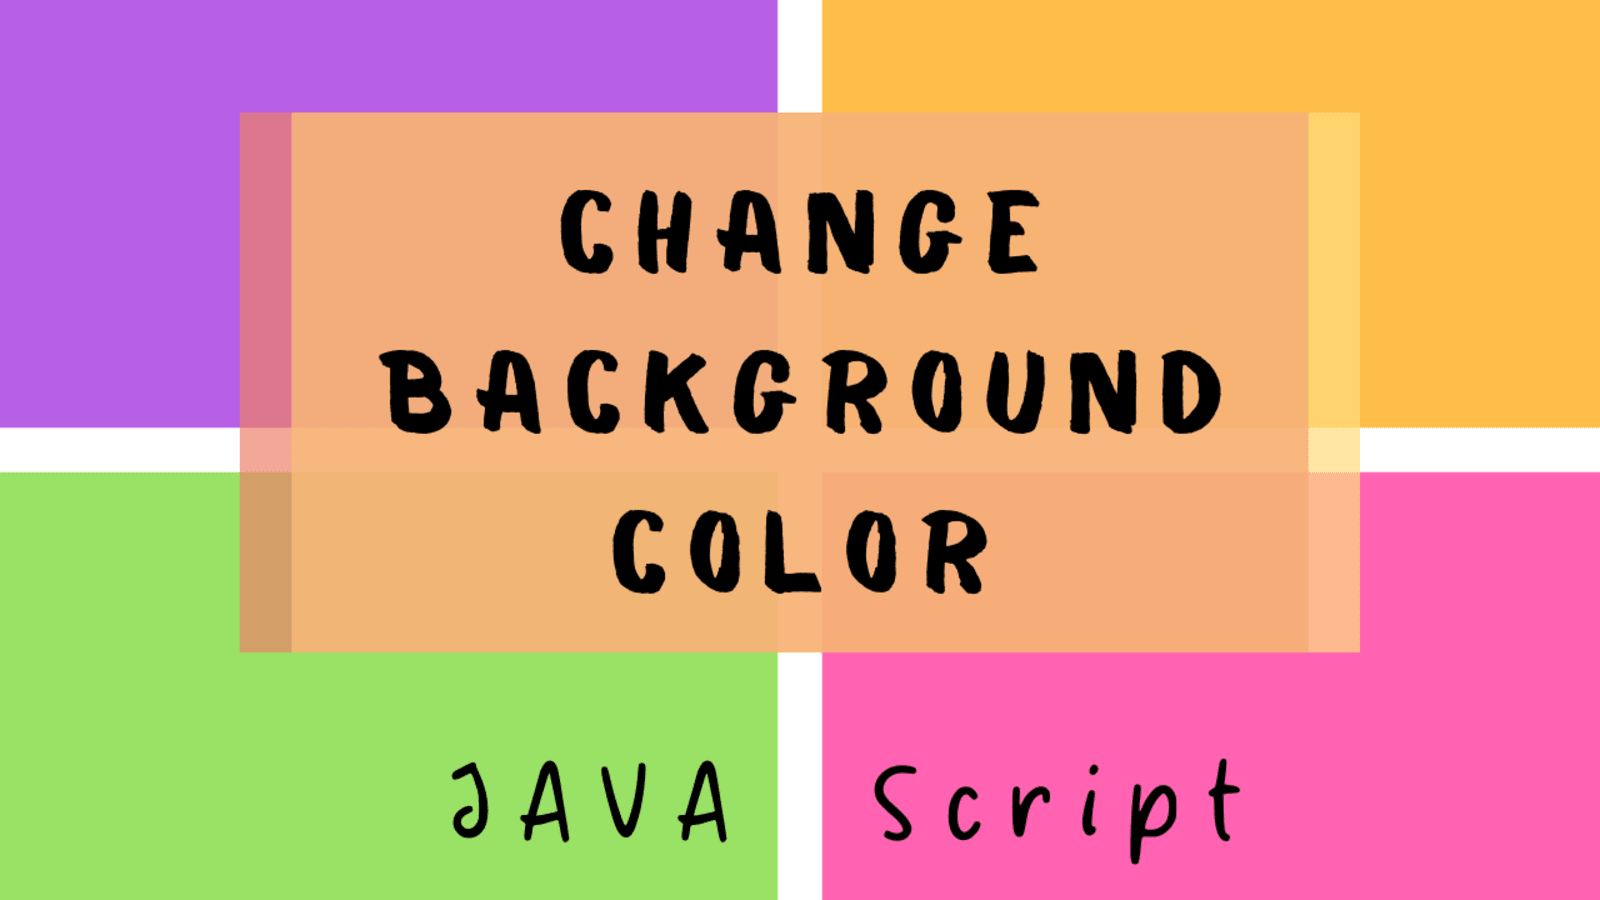 JavaScript background color là một phương pháp đơn giản để thêm màu sắc vào website của bạn. Với JavaScript, bạn có thể kiểm soát màu sắc và tạo ra những hiệu ứng nổi bật cho các phần tử trên trang web.